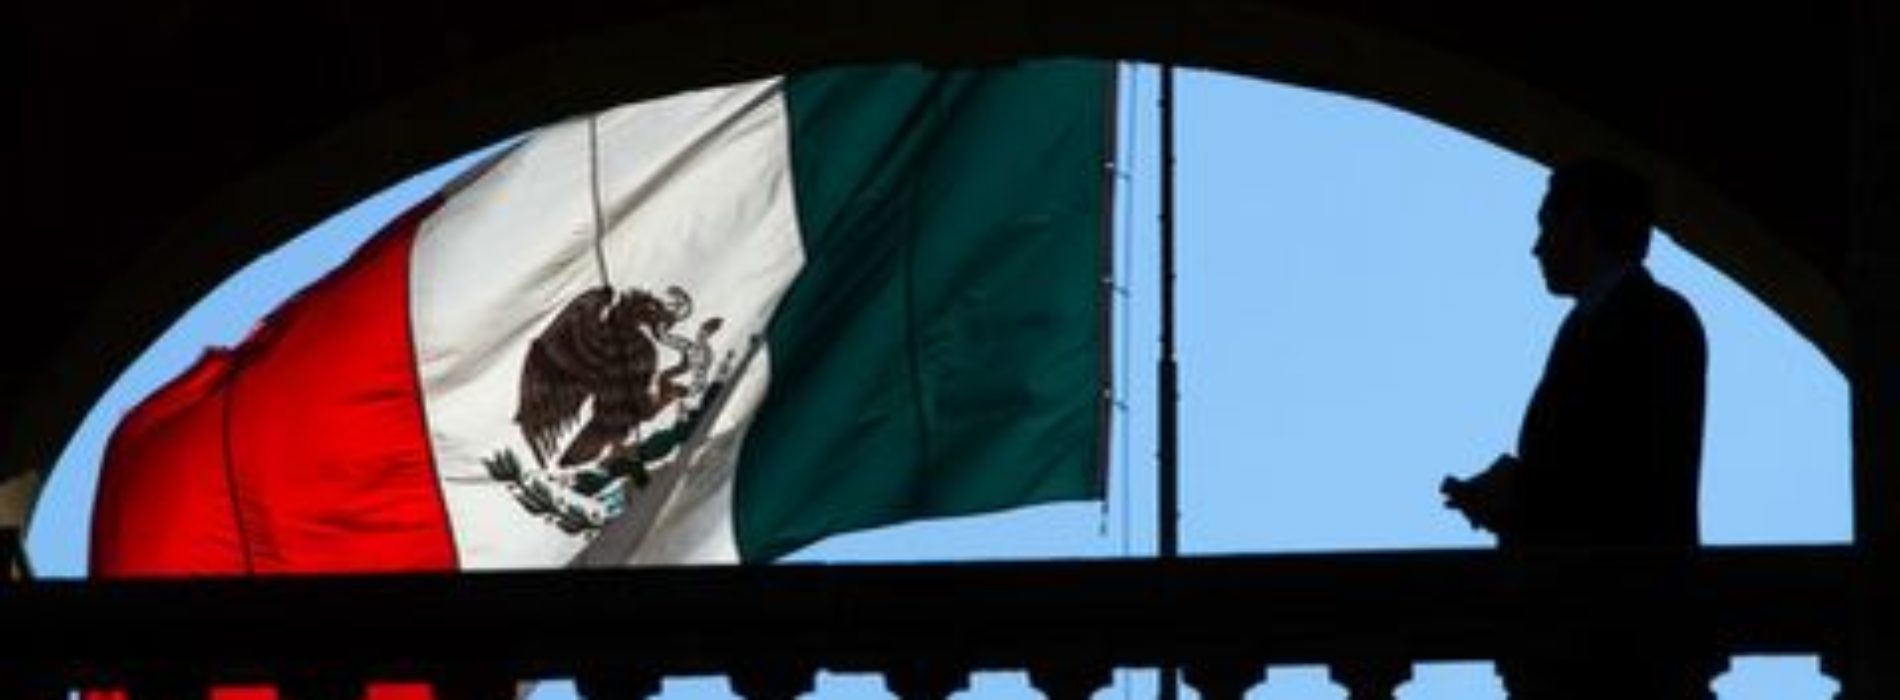 SRE quiere reconstruir percepción de México en EU